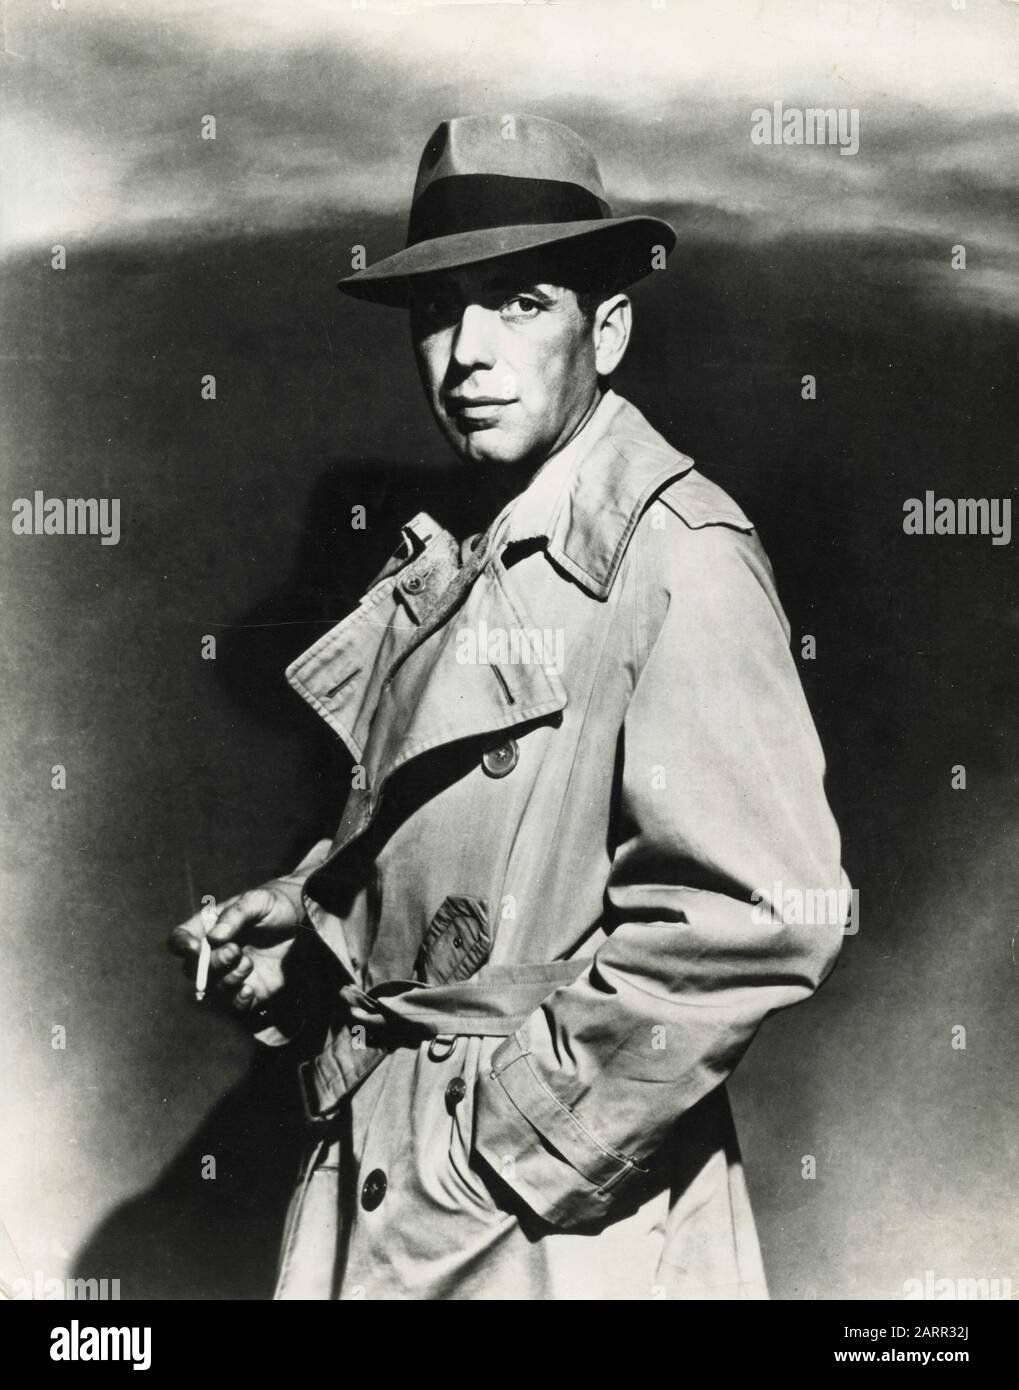 L'acteur américain Humphrey Bogart lors du tournage du film Casablanca, 1942 Banque D'Images